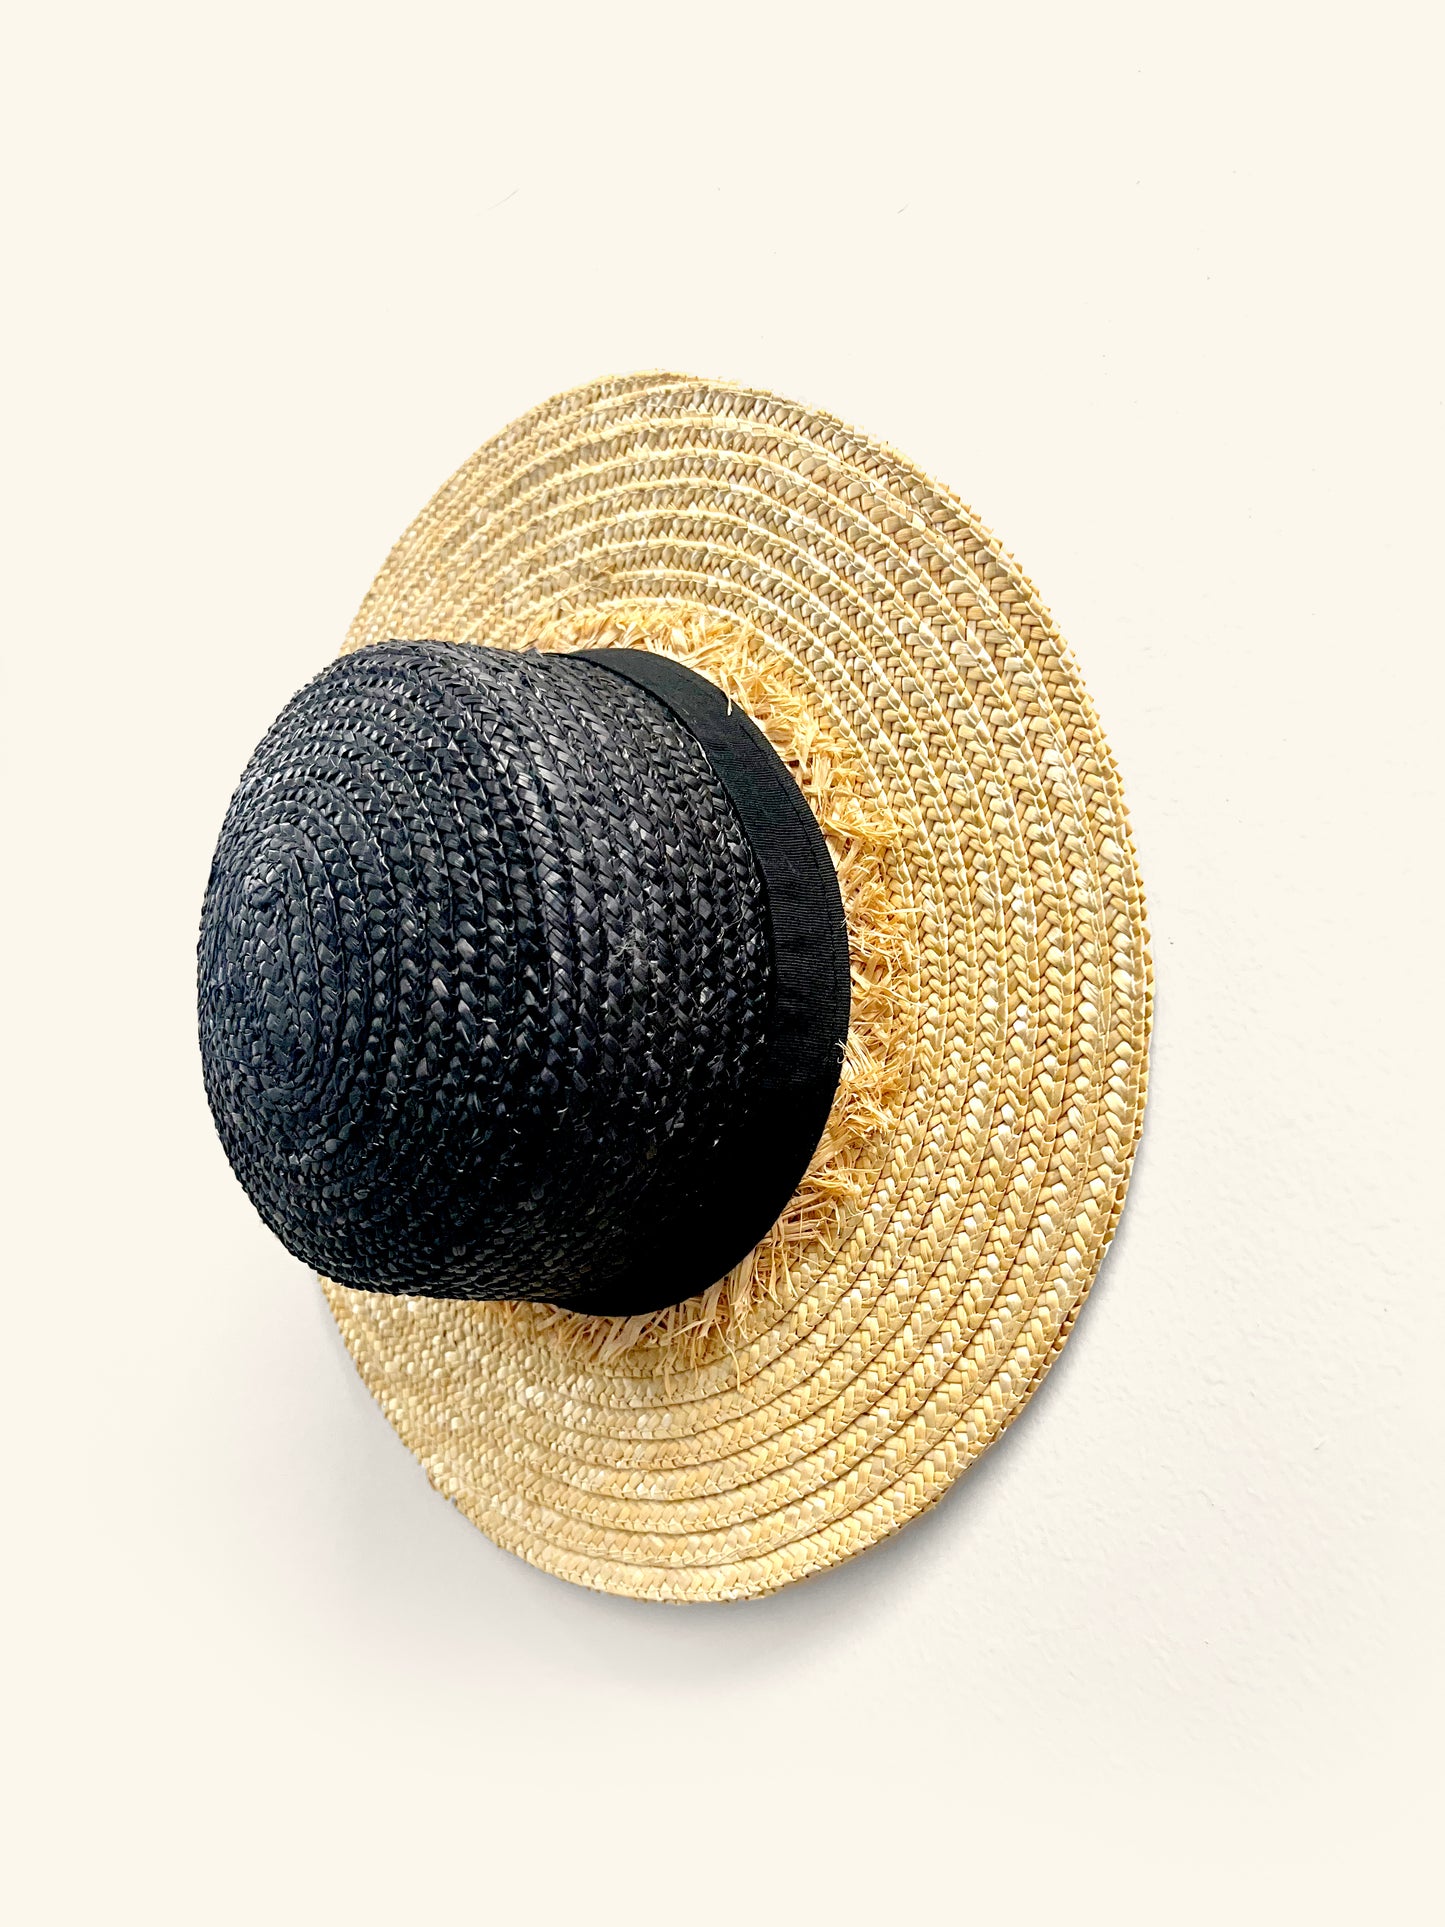 Cancun Cabana Straw Hat/ Black & Tan